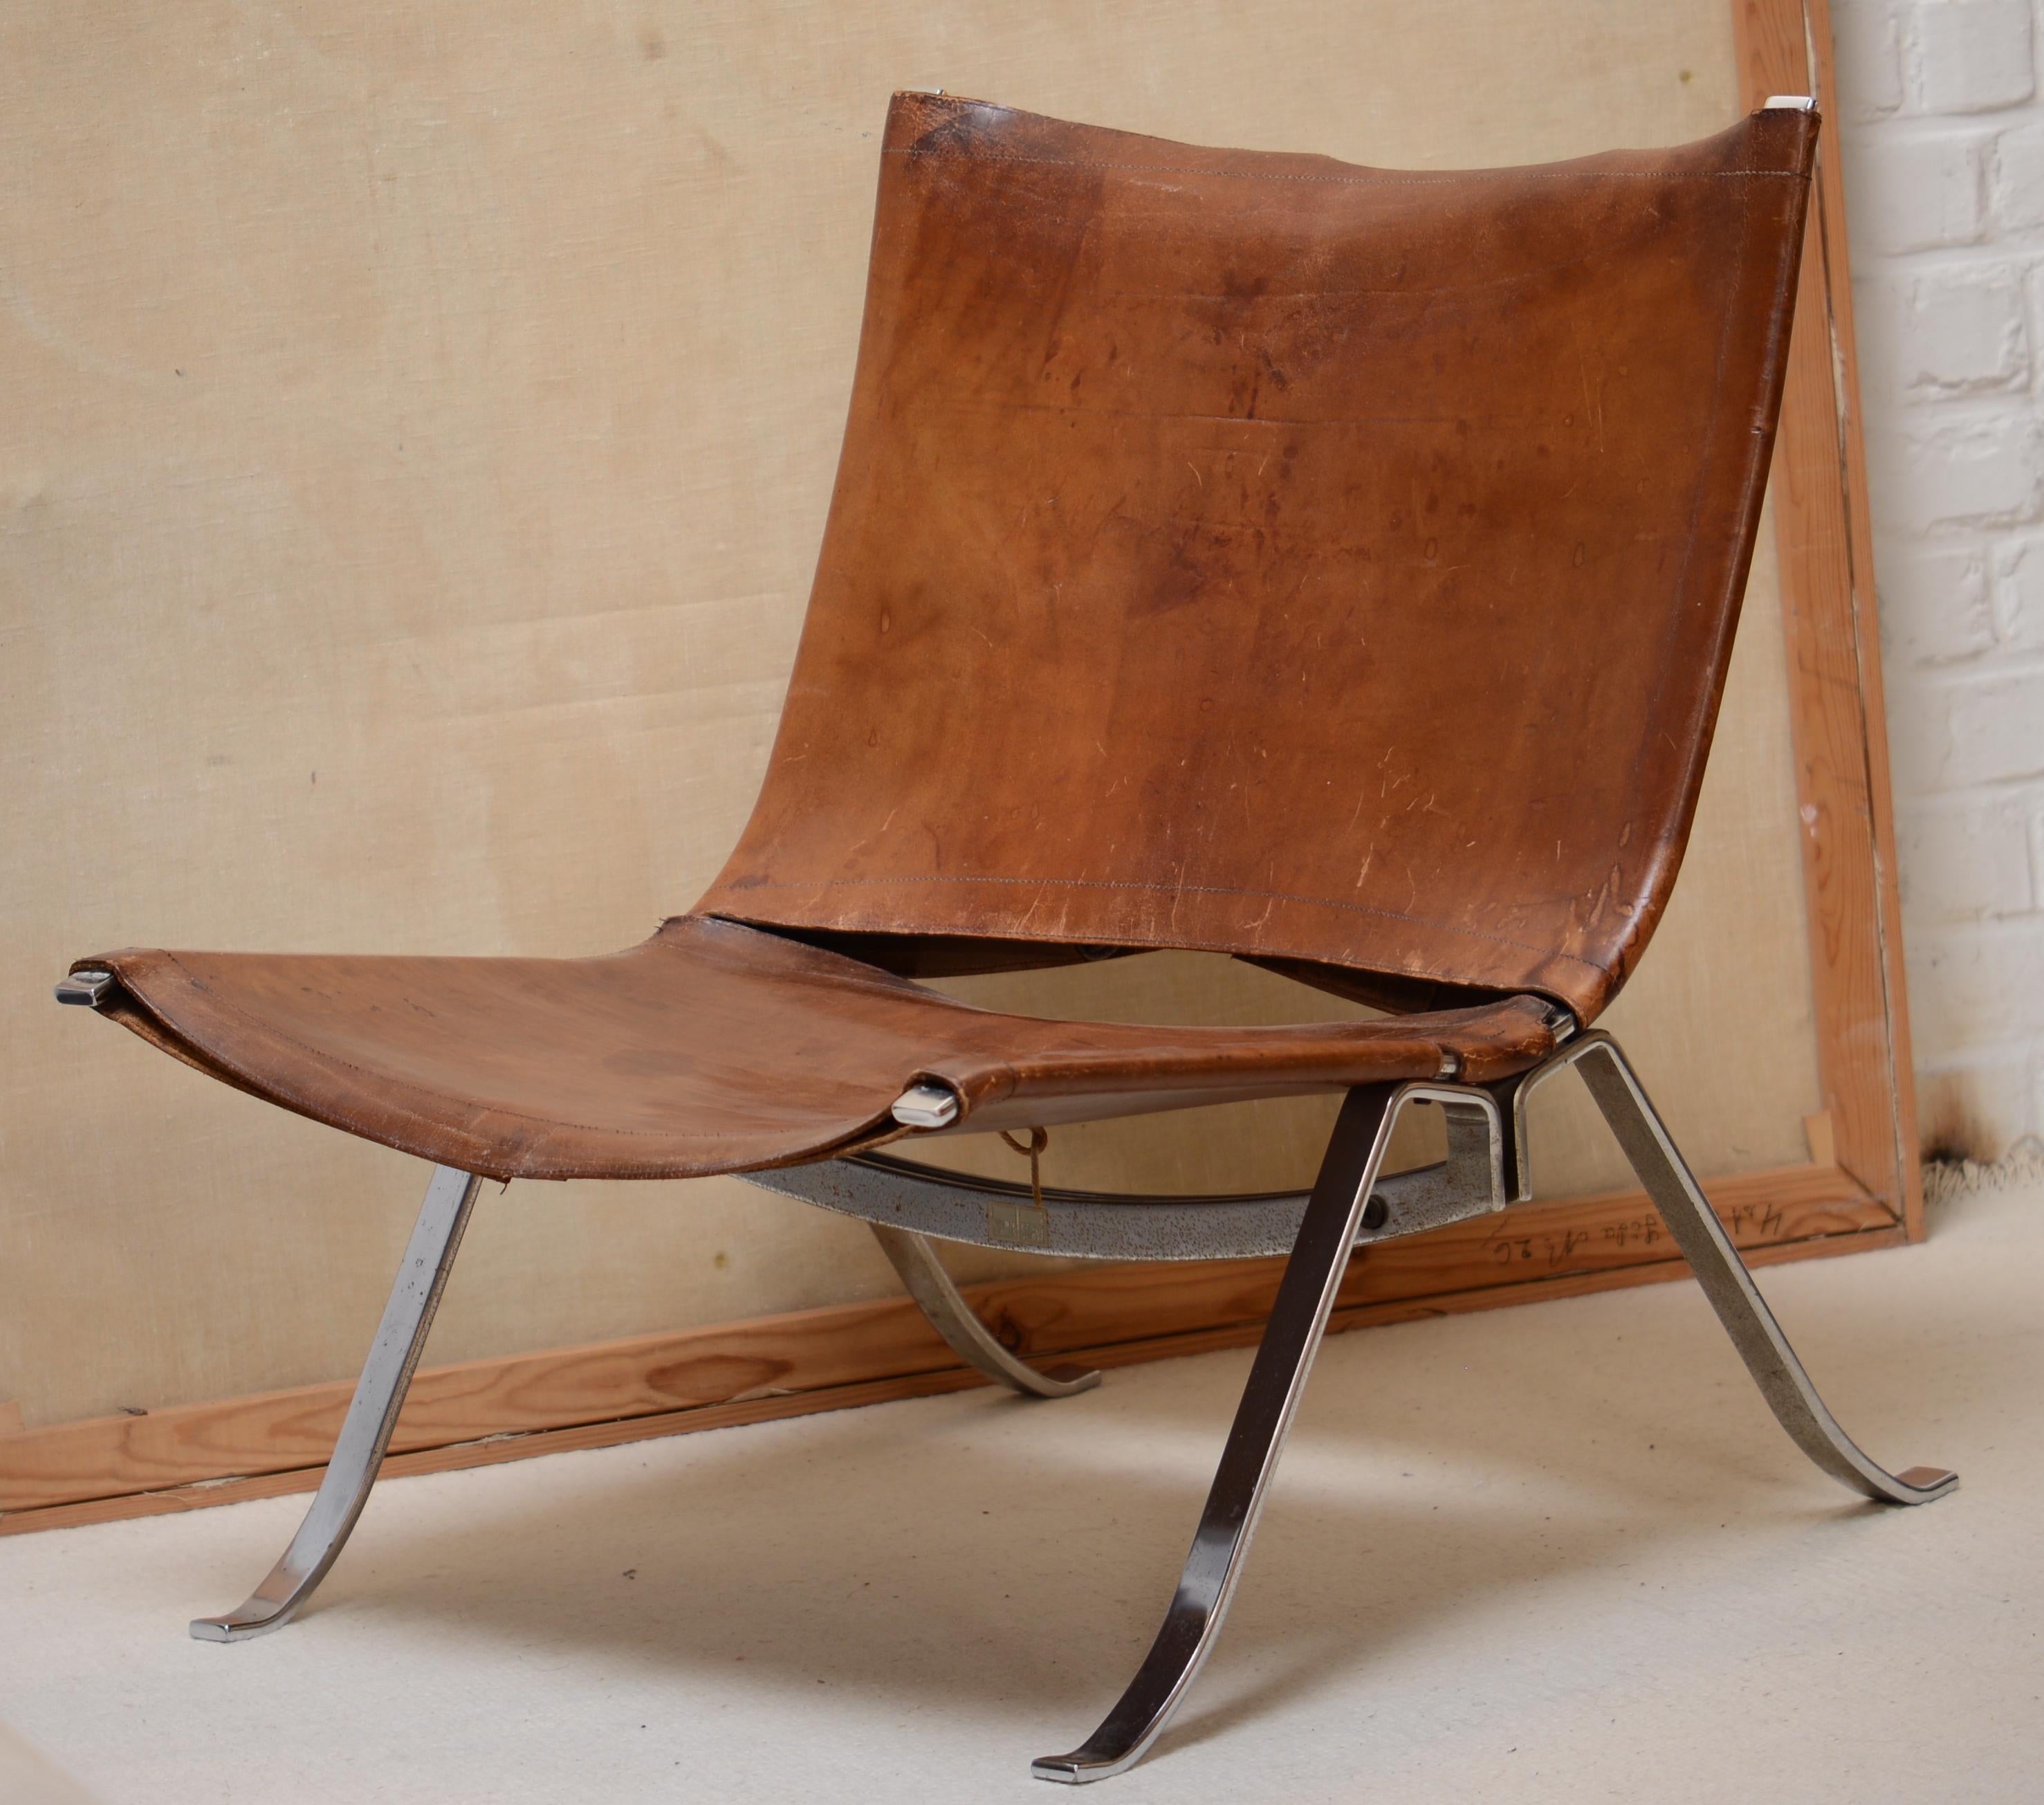 Scandinavian Modern Preben Fabricius Cognac Leather Chair Arnold Exclusive, Denmark, 1960s Rare